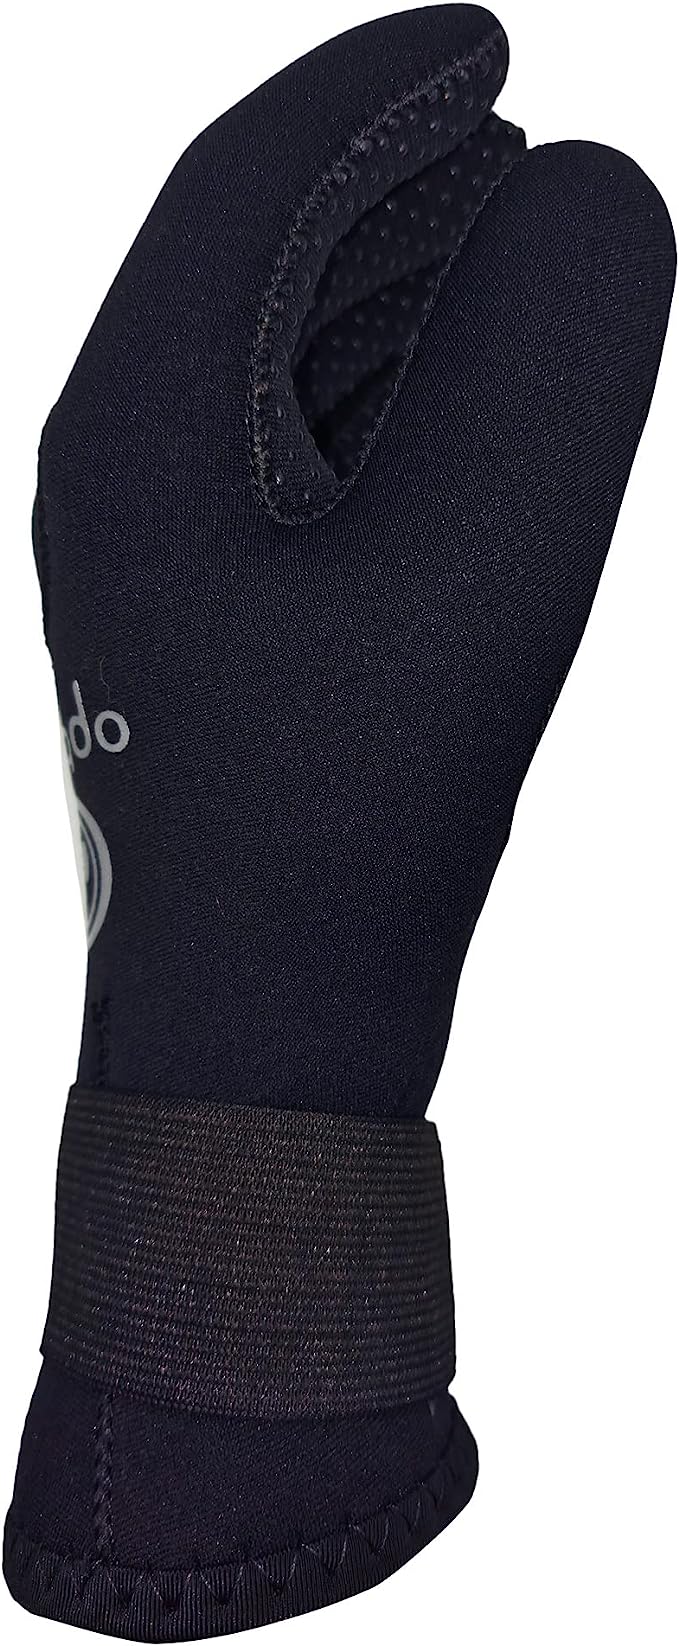 Optimum Wetsuit Neoprene Gloves, 3mm Surfing, Diving, Kayaking, Water Sport Anti Slip Diving Gloves for Men and Women - Optimum